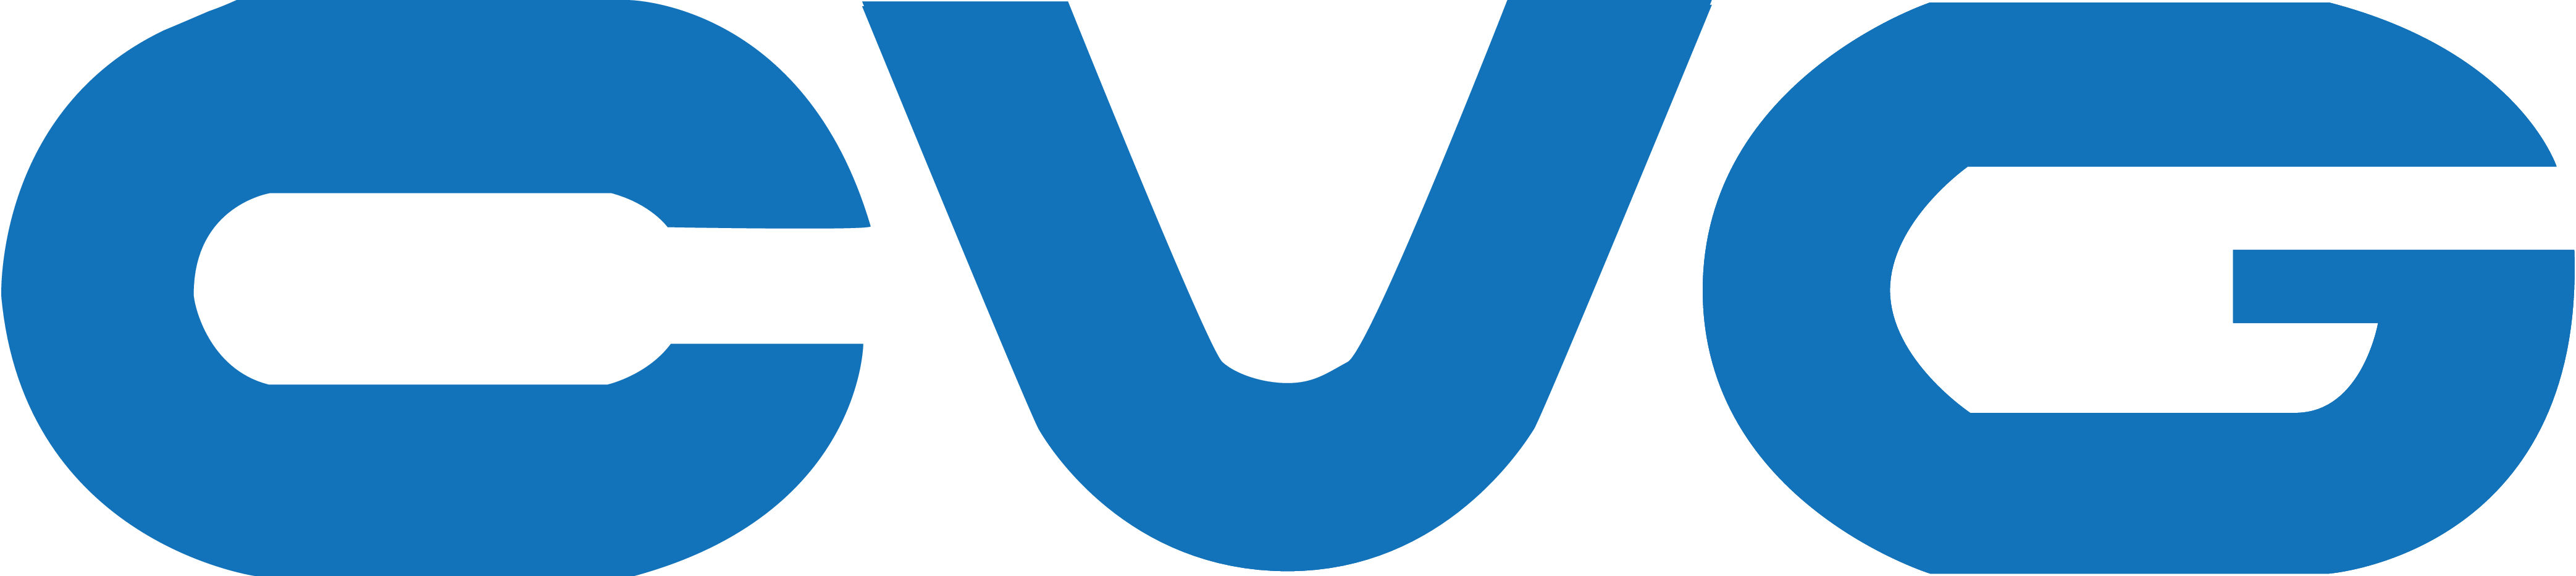 2020 CVG Logo JPG.jpg